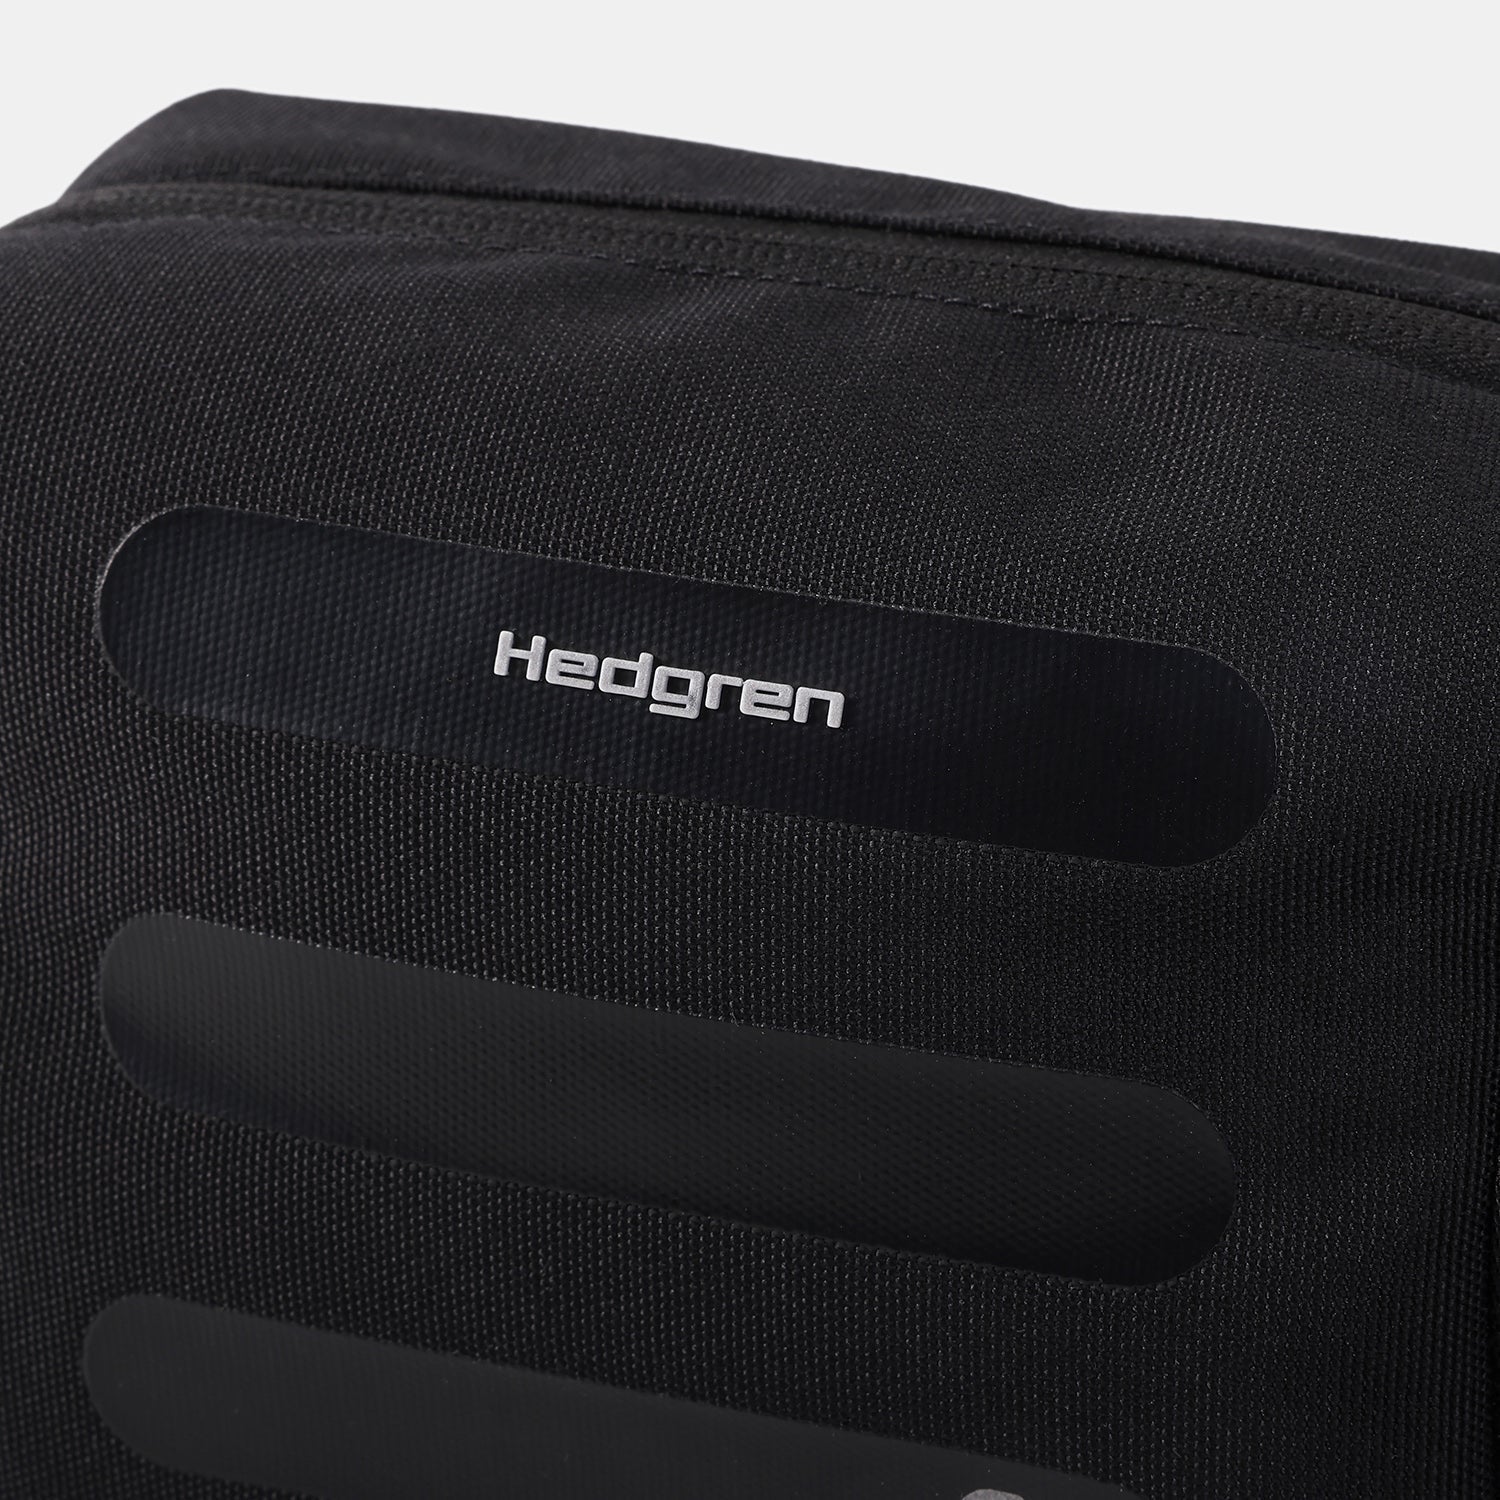 Hedgren Break Black Bag